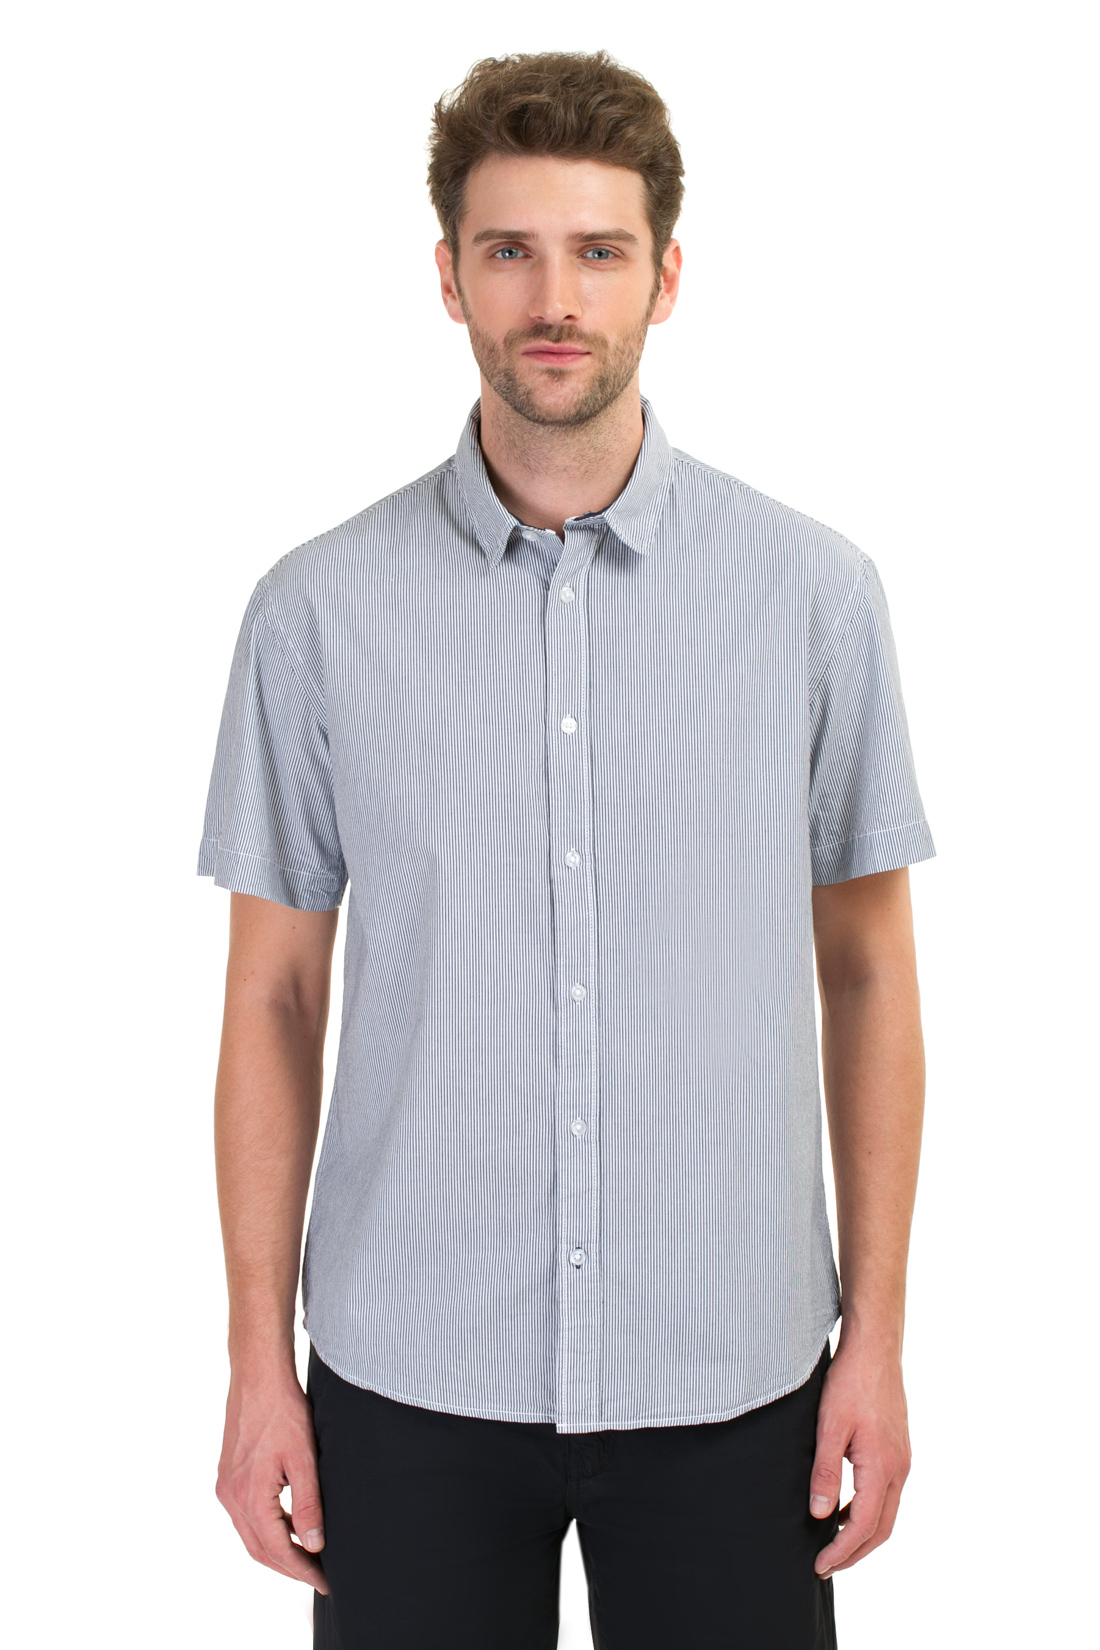 Рубашка с коротким рукавом в полоску (арт. baon B687018), размер XXL, цвет синий